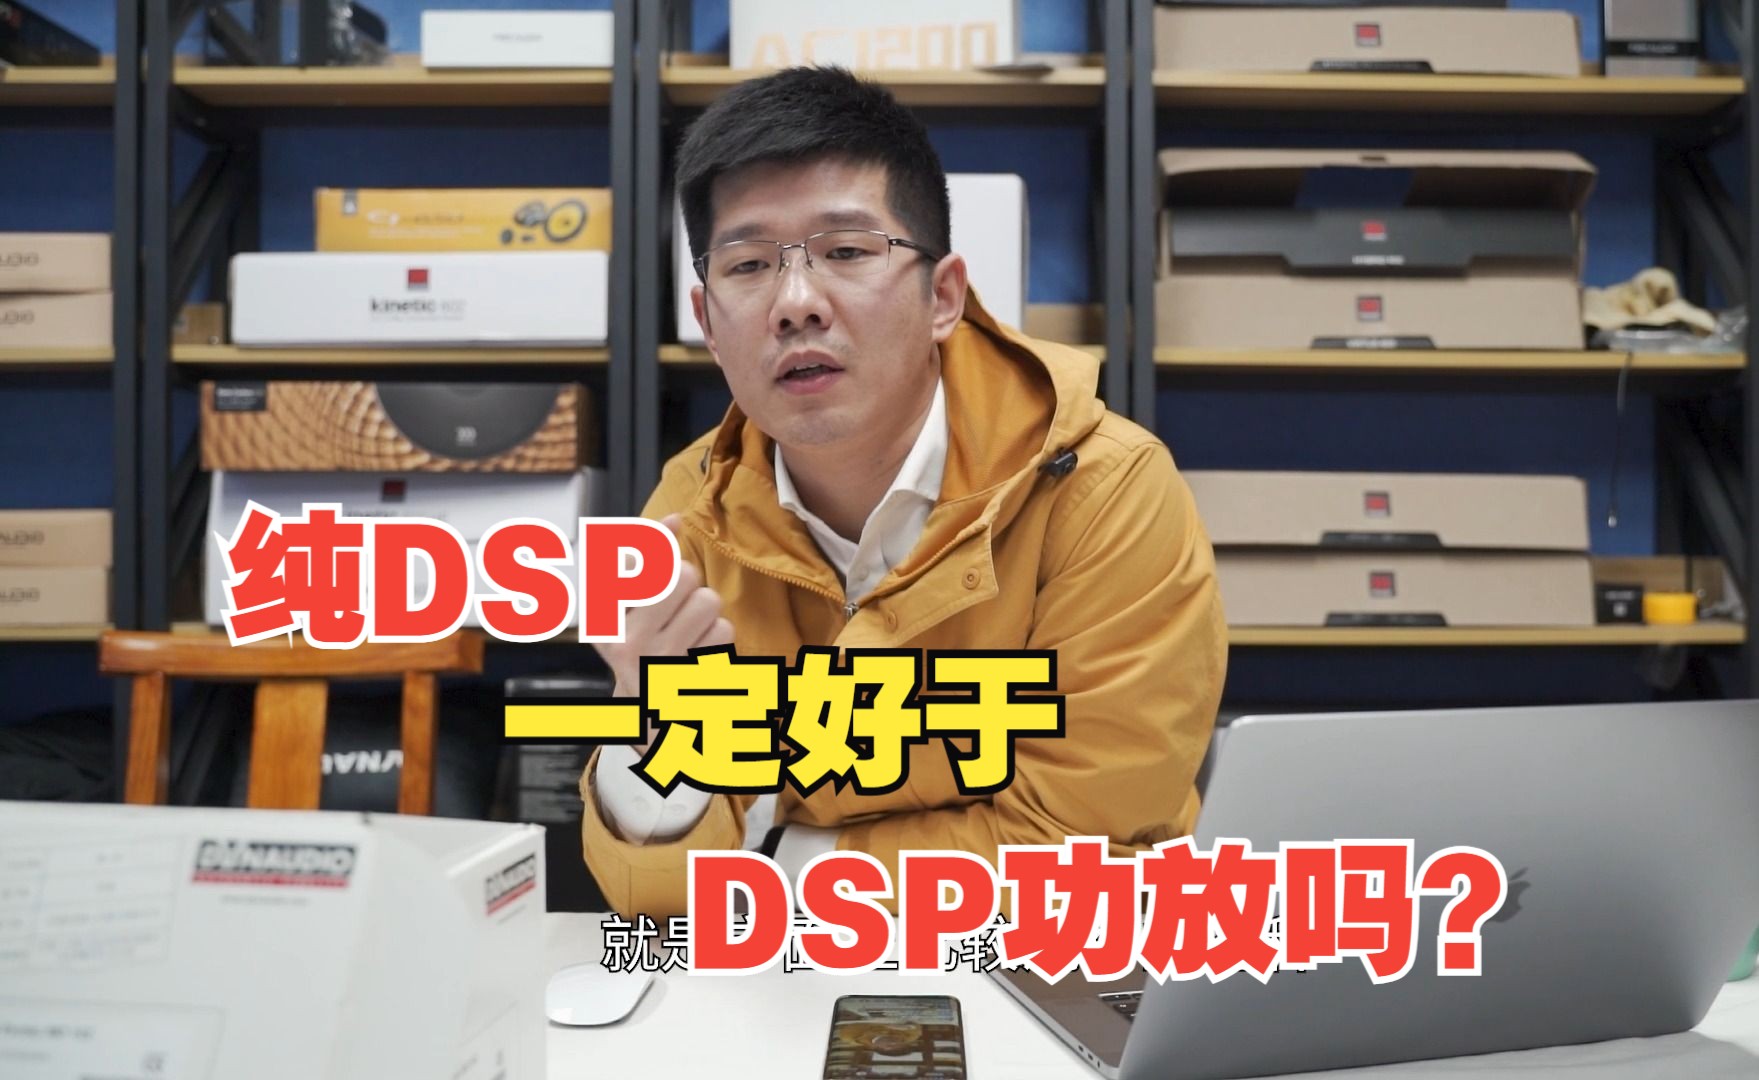 纯DSP一定好于DSP功放吗?